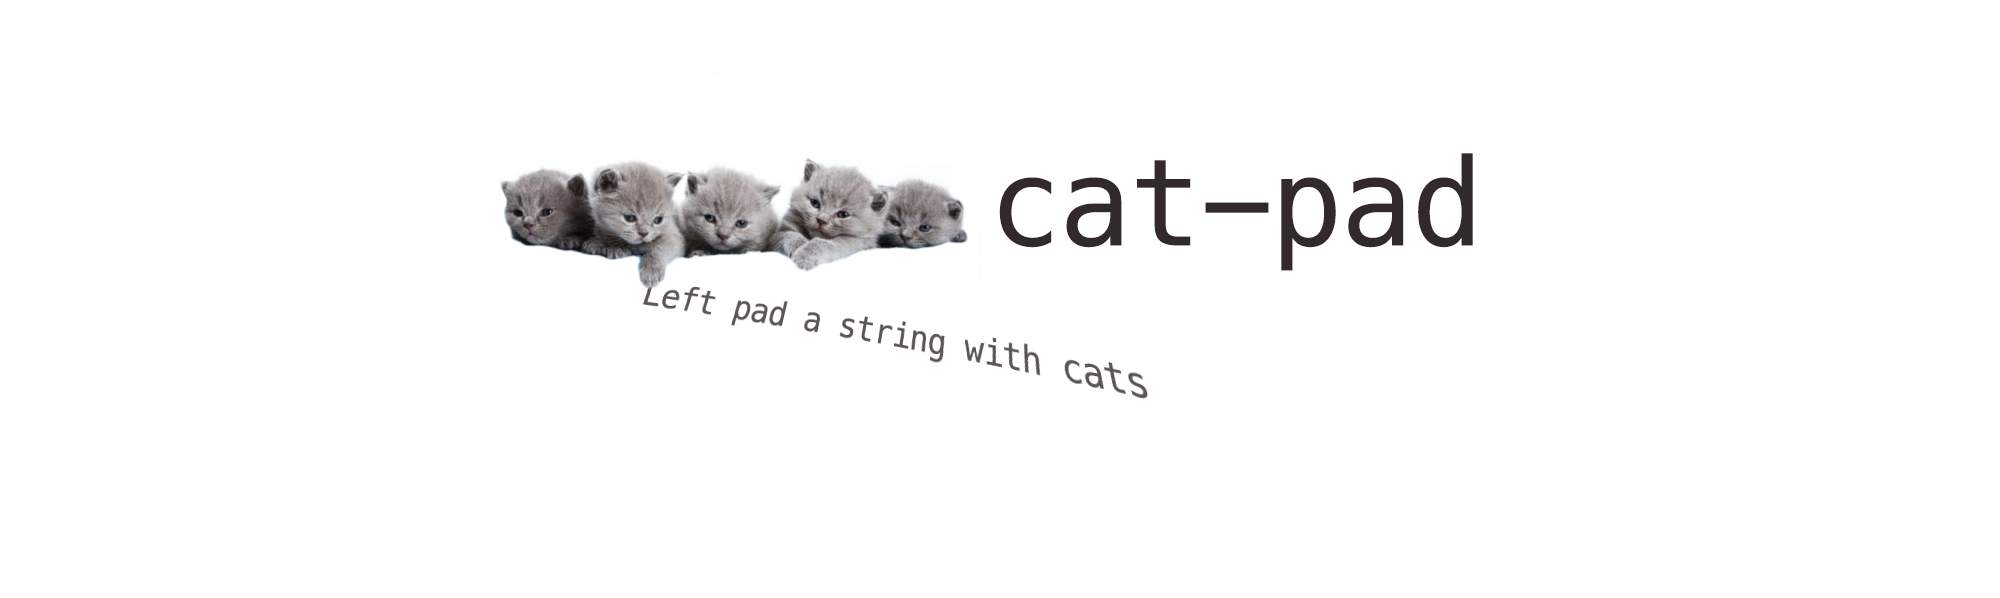 cat-pad